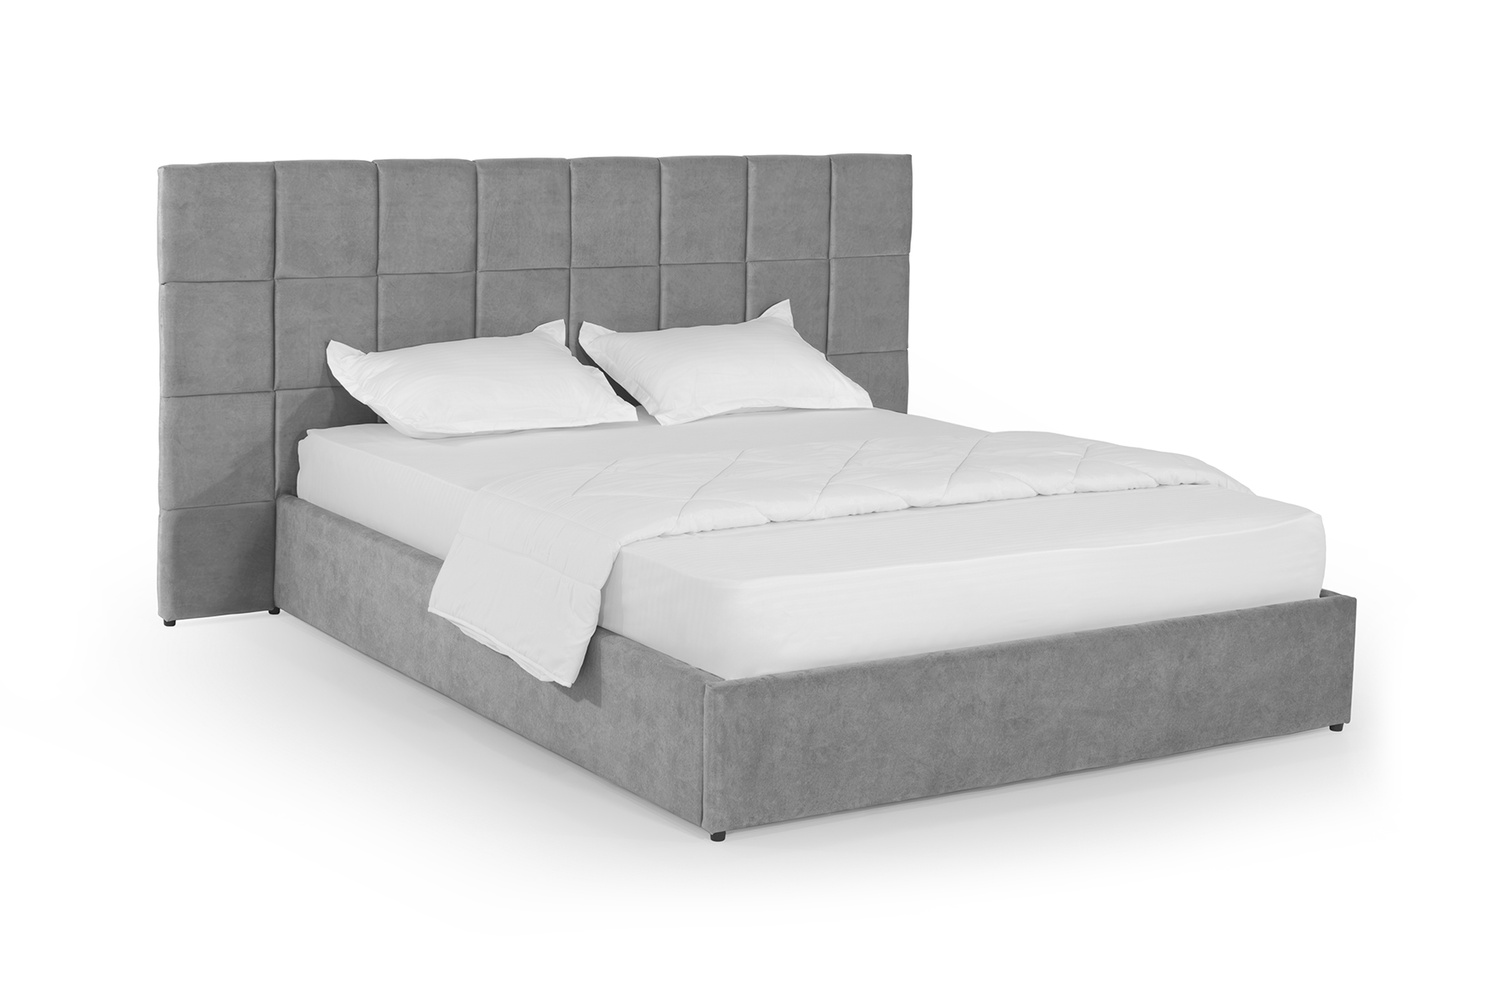 Ліжко Гортензія 180х200 (Світло-сірий, велюр, без підйомного механізму) IMI grtnz180x200ssb фото